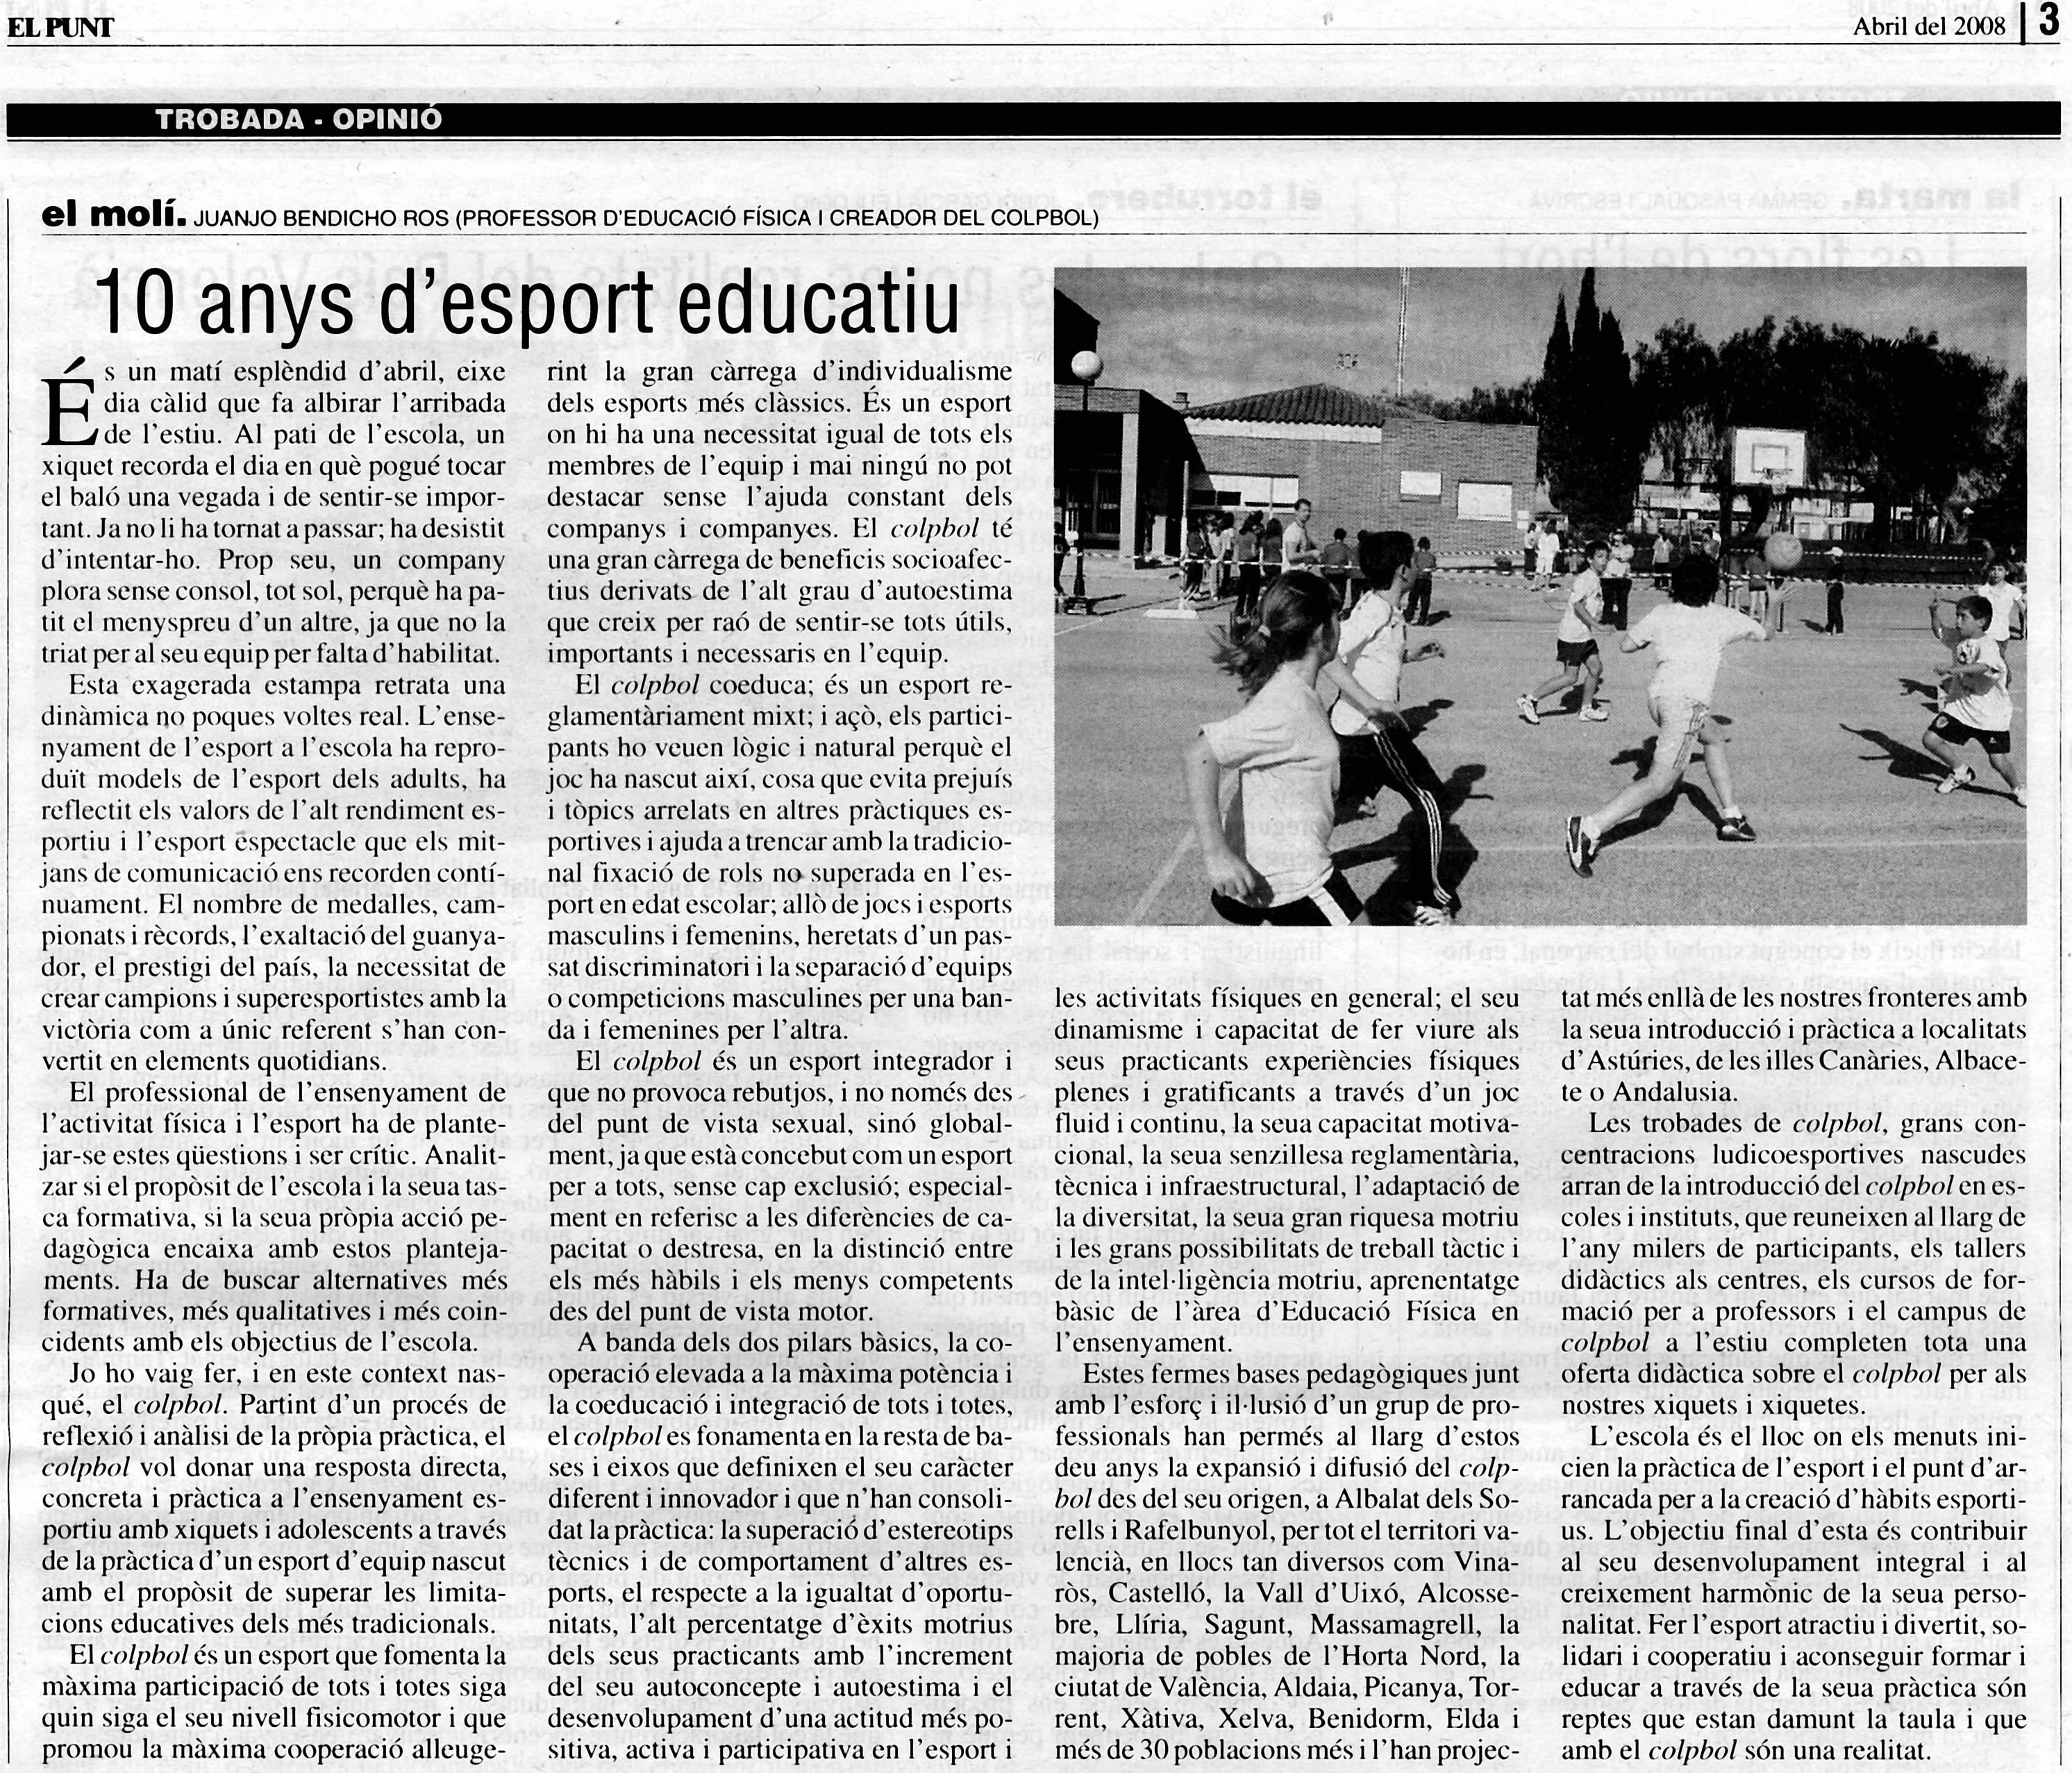 10 anys d’esport educatiu (Article publicat a El Punt)